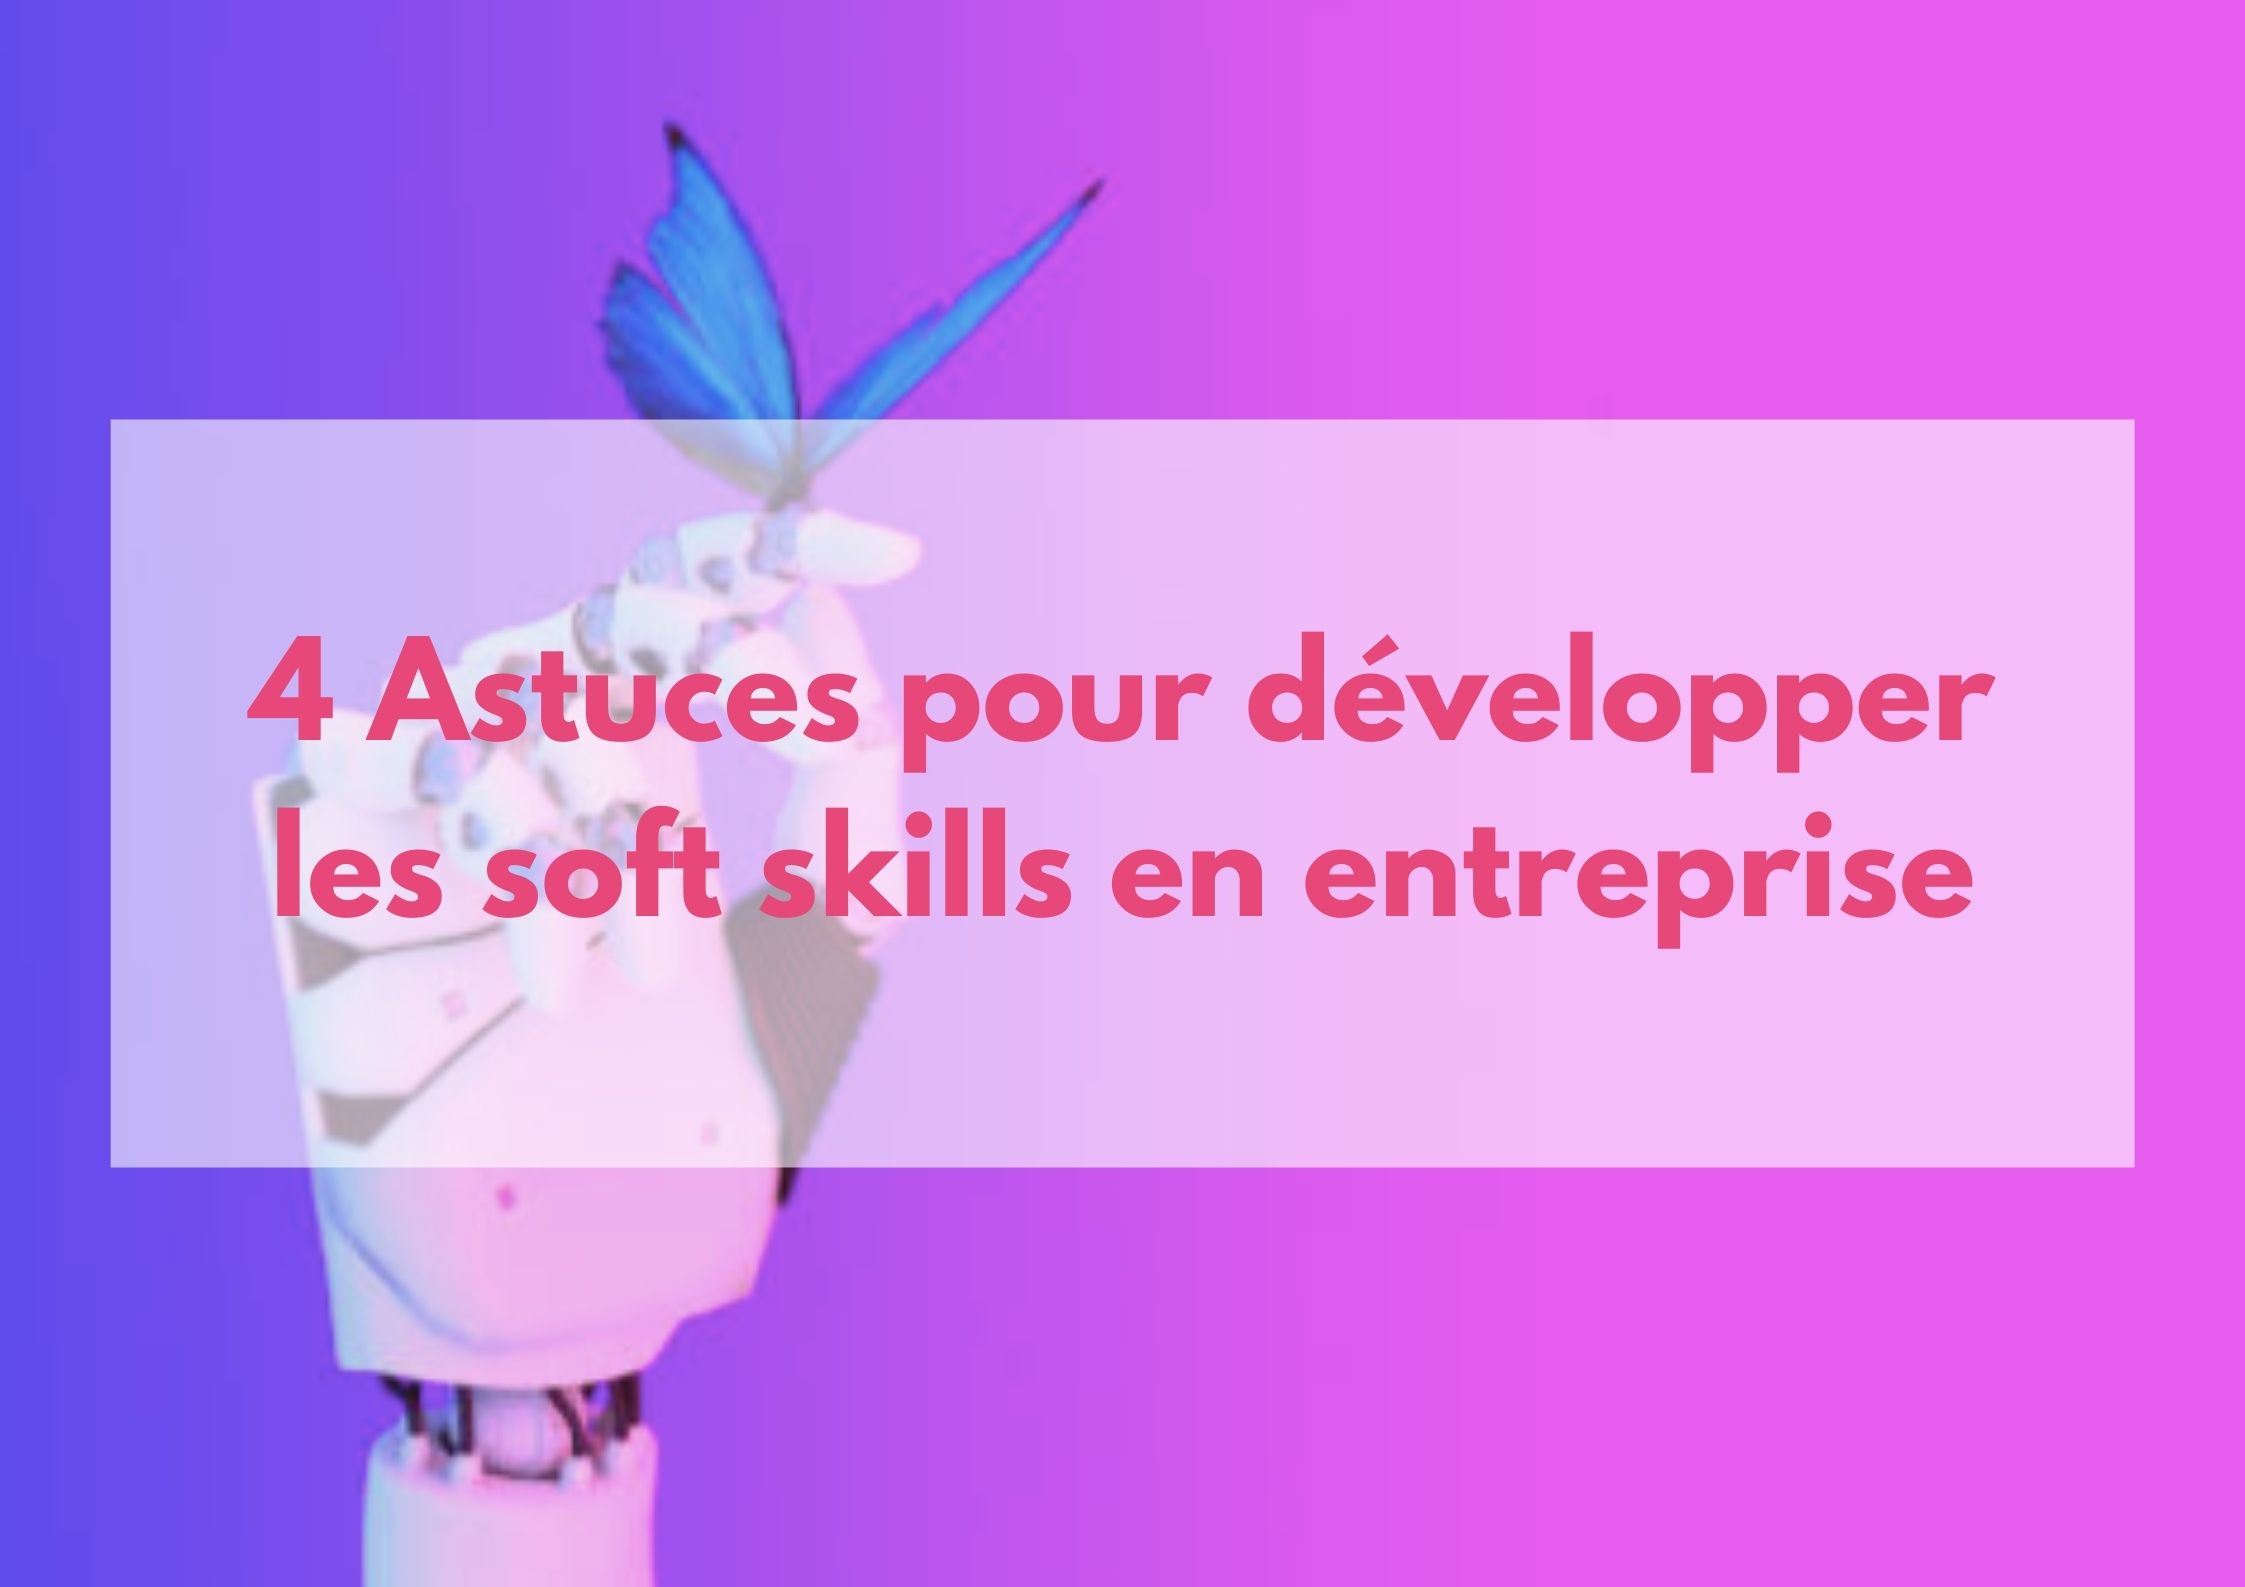 You are currently viewing 4 Astuces pour développer les soft skills en entreprise